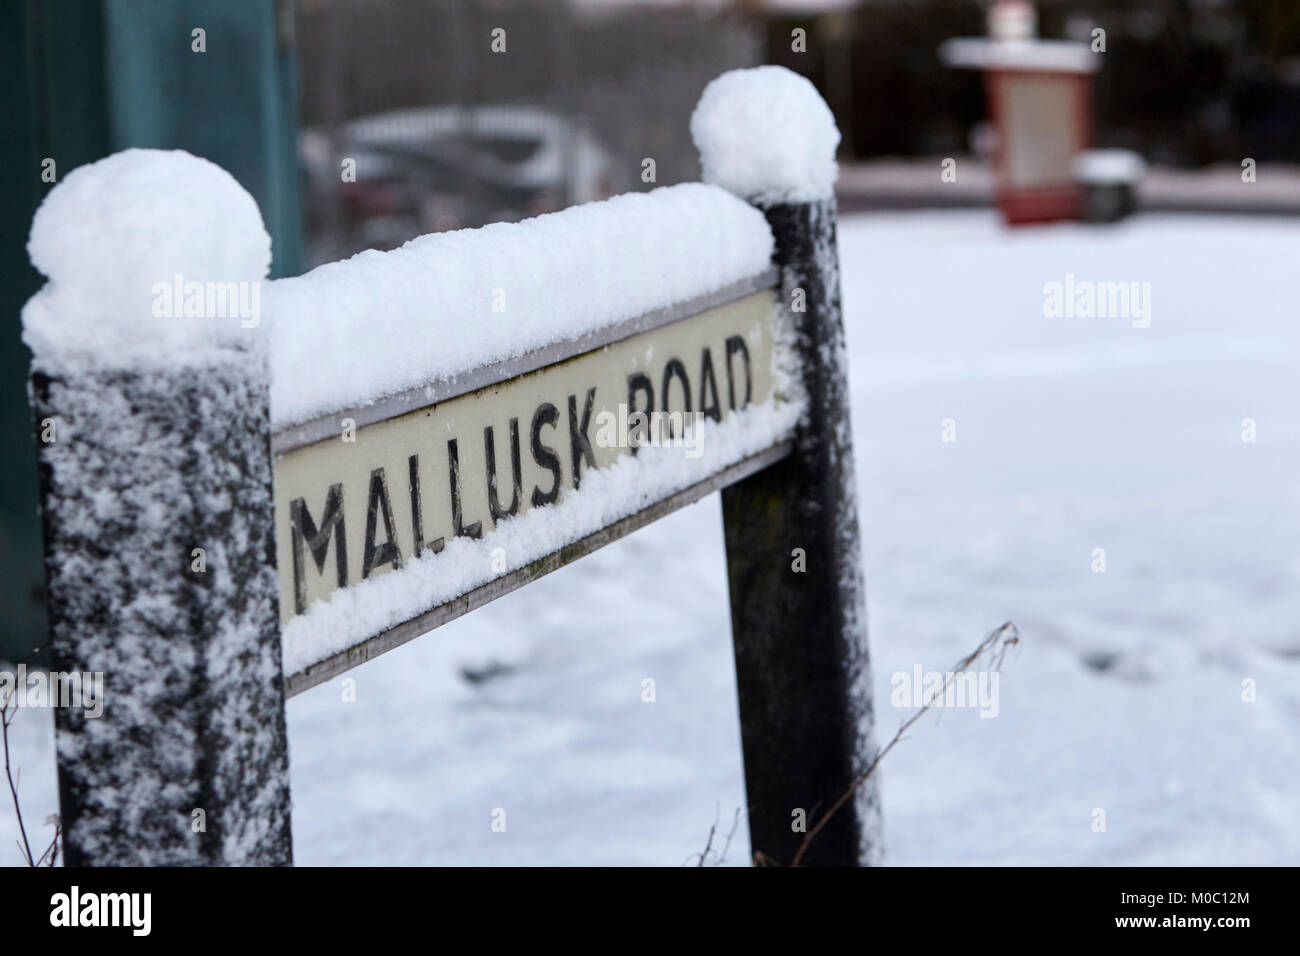 Firmar por la calle carretera mallusk cubierto de nieve en Newtownabbey Irlanda del Norte Foto de stock